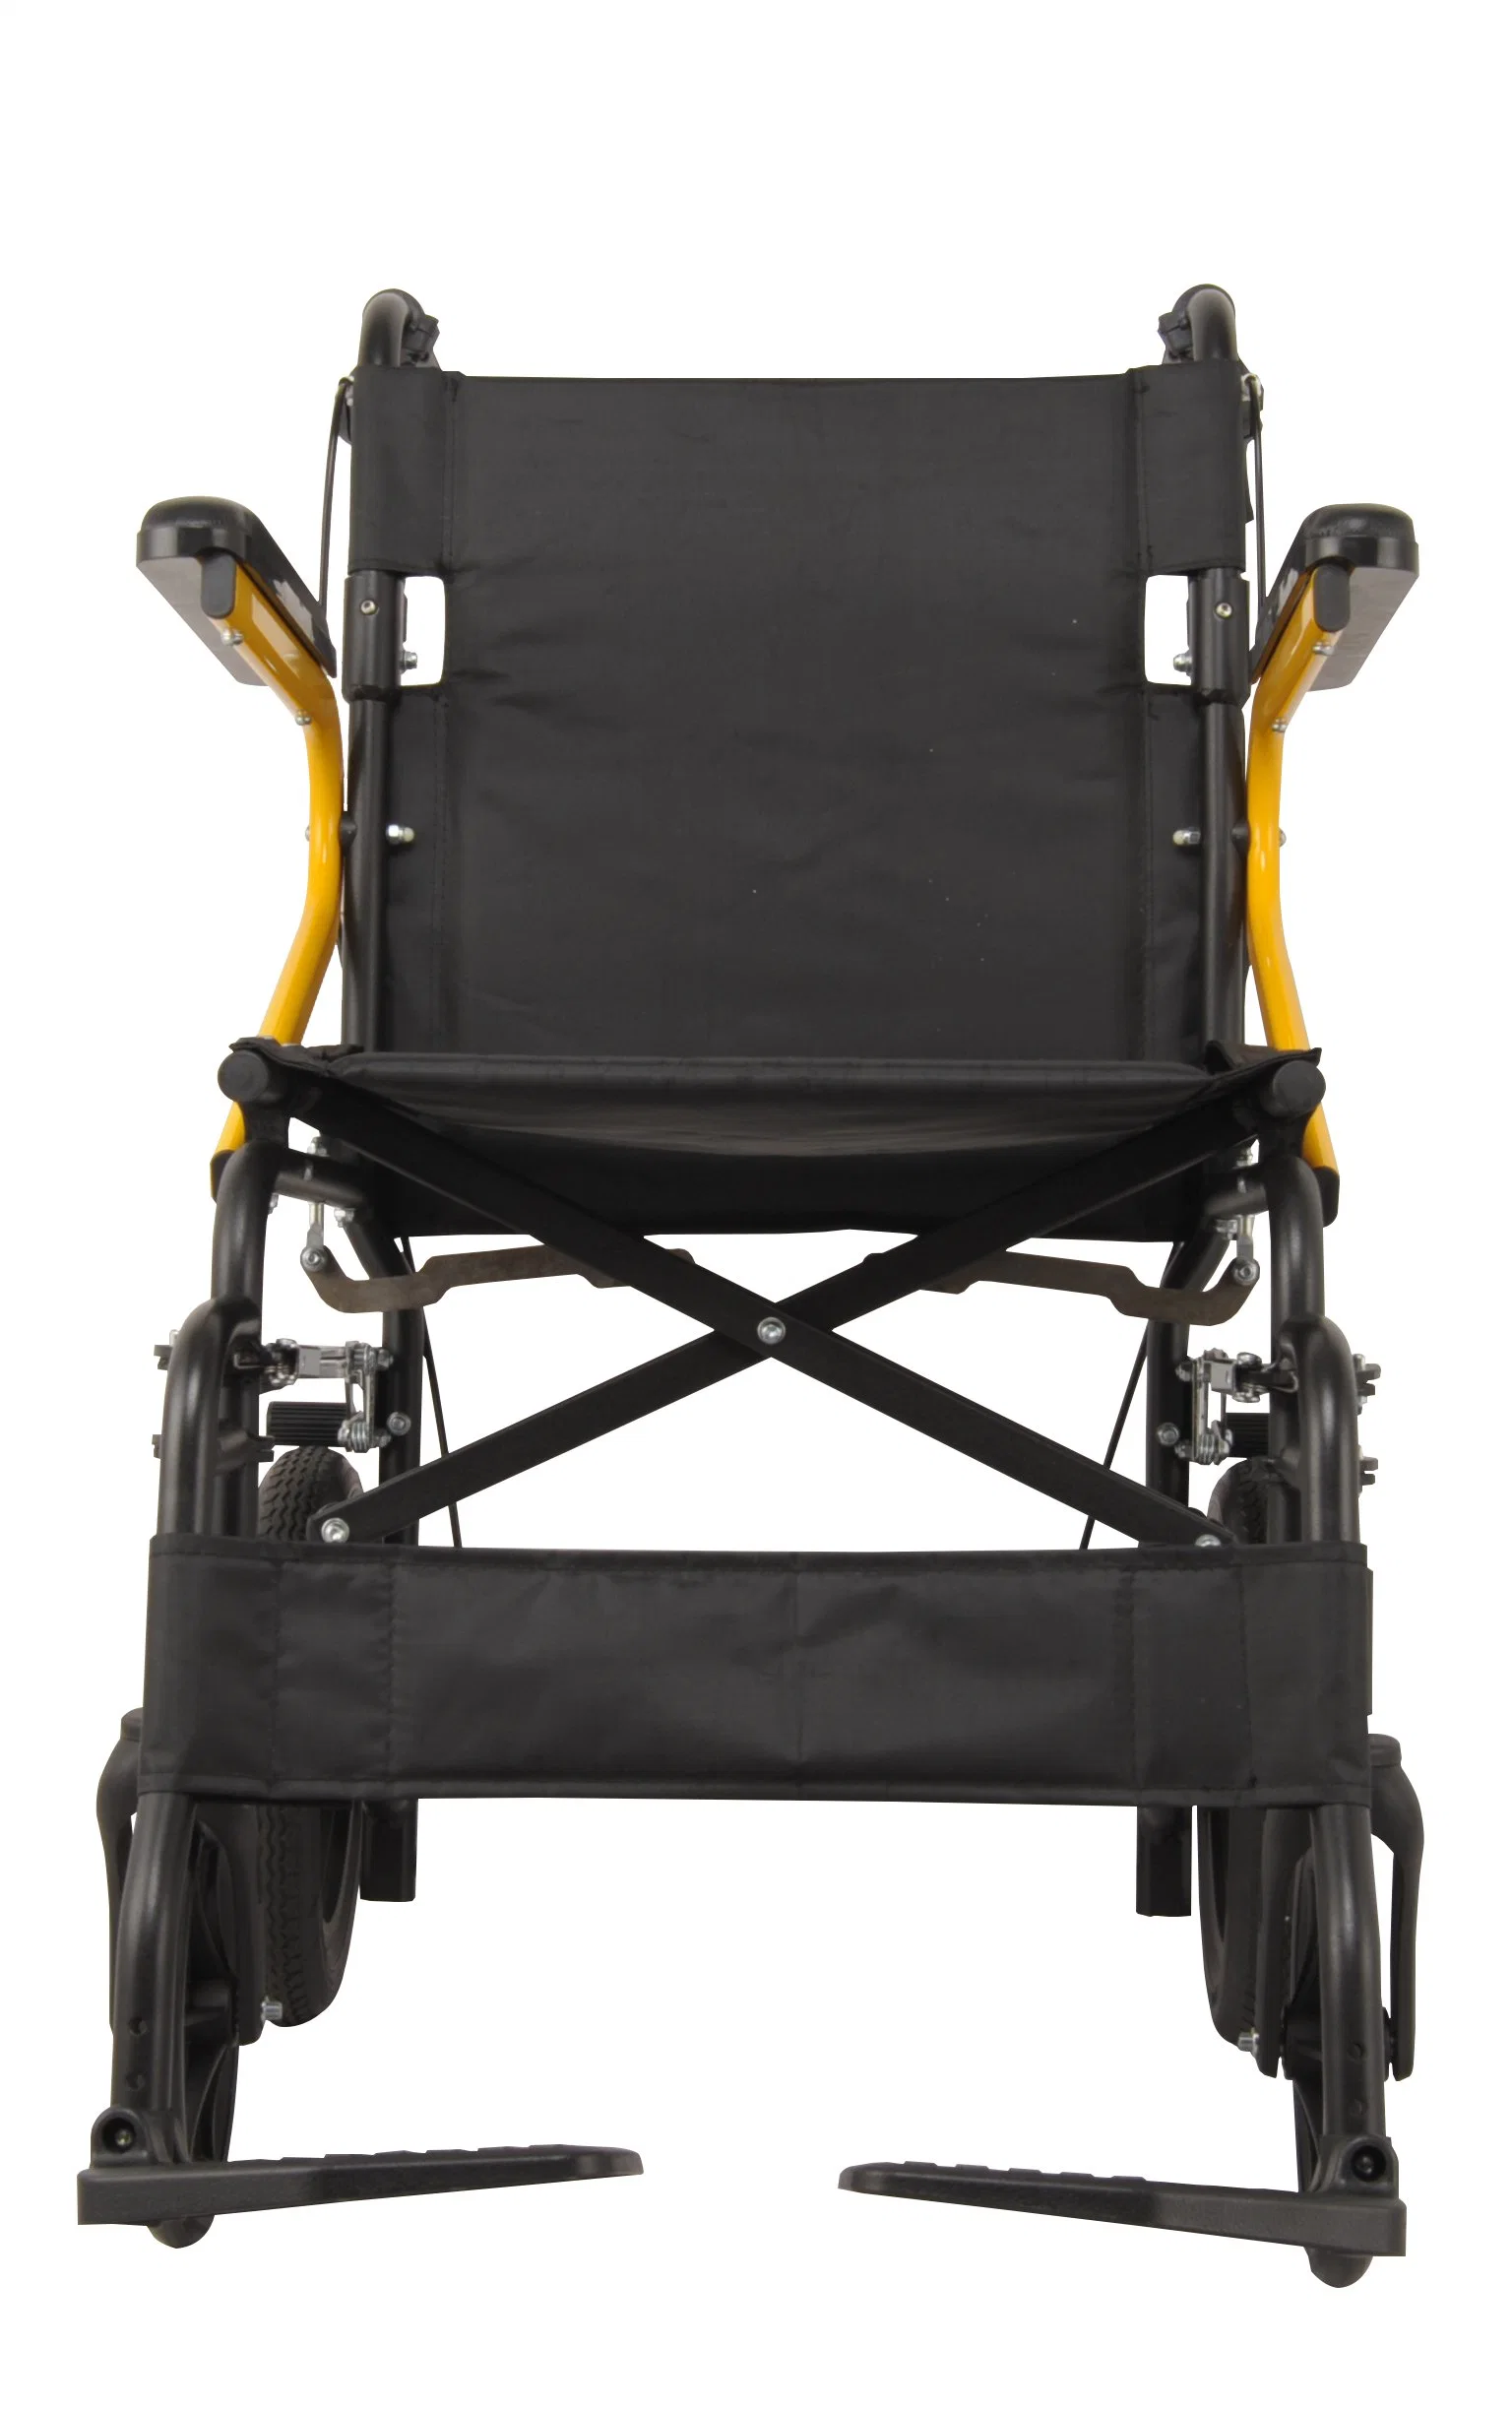 Легкое ручное сверхлегкое кресло для пожилых и детей